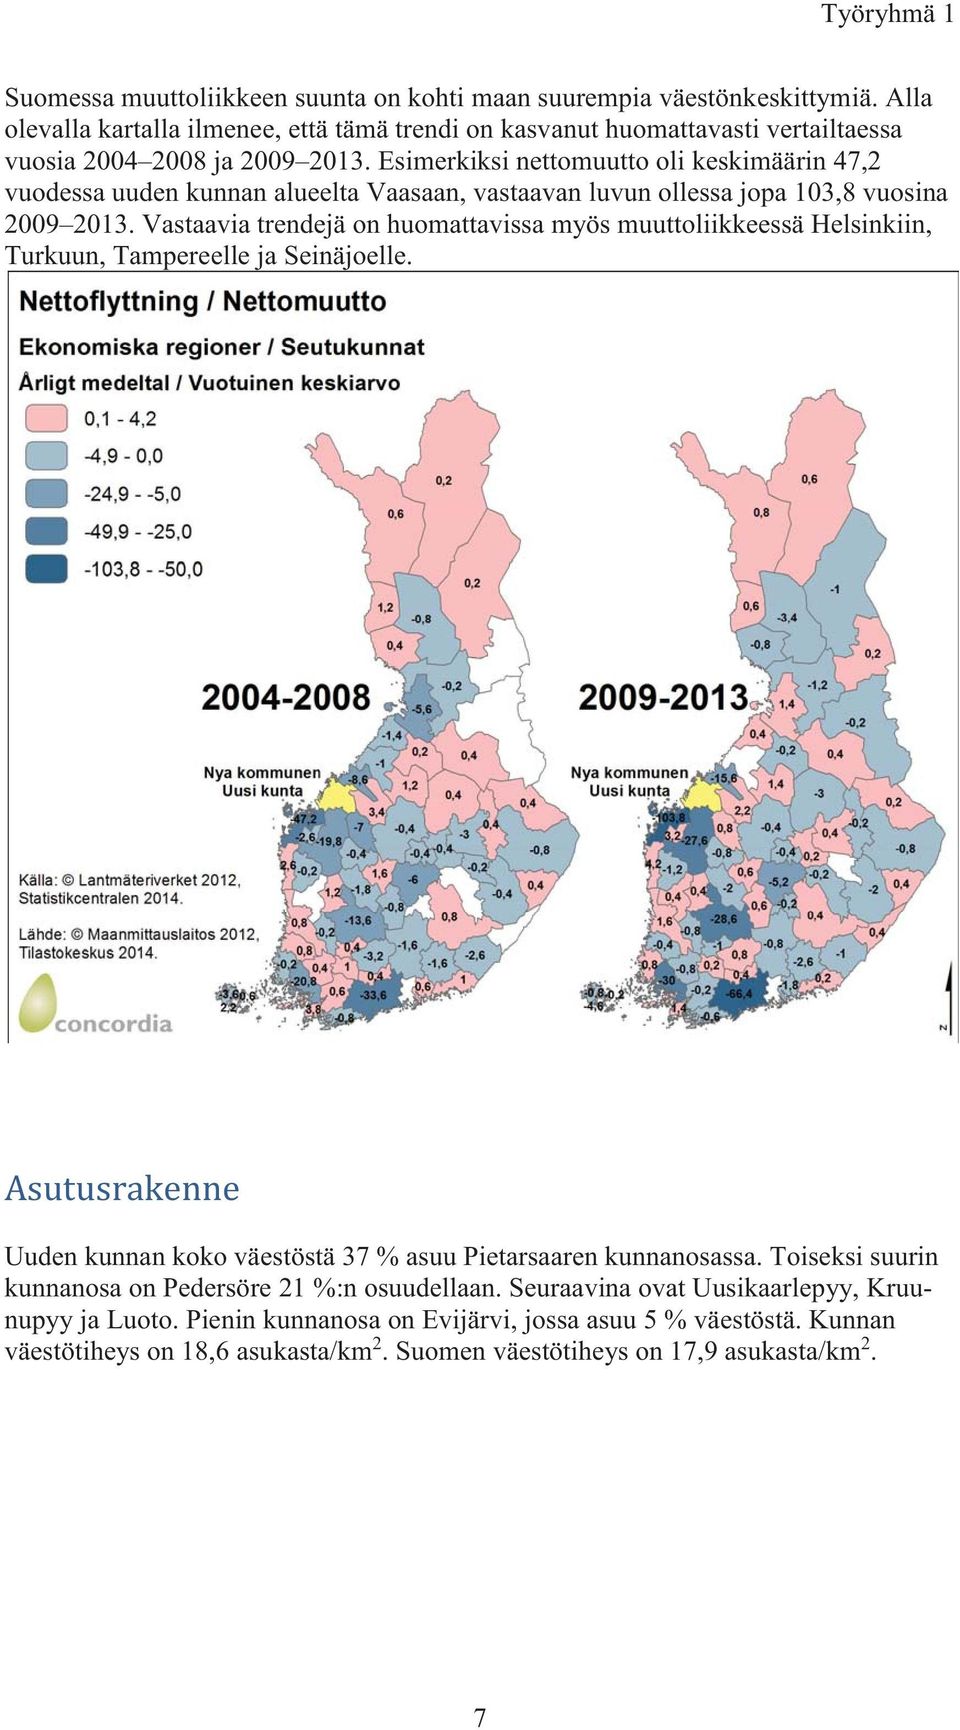 Esimerkiksi nettomuutto oli keskimäärin 47,2 vuodessa uuden kunnan alueelta Vaasaan, vastaavan luvun ollessa jopa 103,8 vuosina 2009 2013.